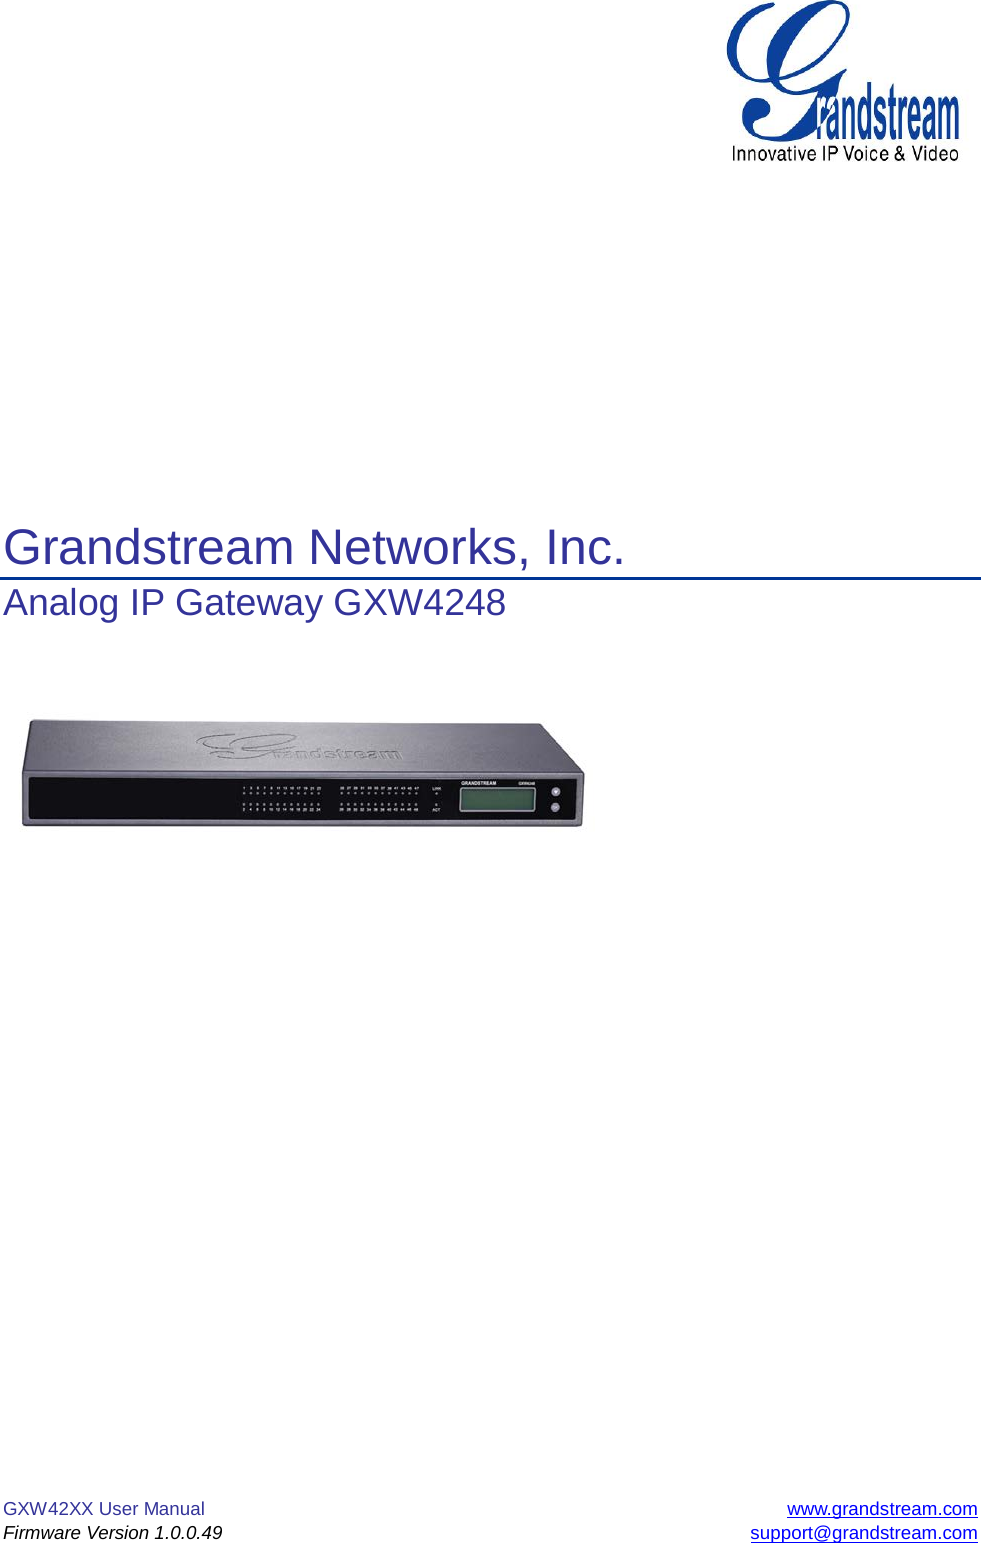 GXW42XX User Manual www.grandstream.com Firmware Version 1.0.0.49 support@grandstream.com           Grandstream Networks, Inc. Analog IP Gateway GXW4248              